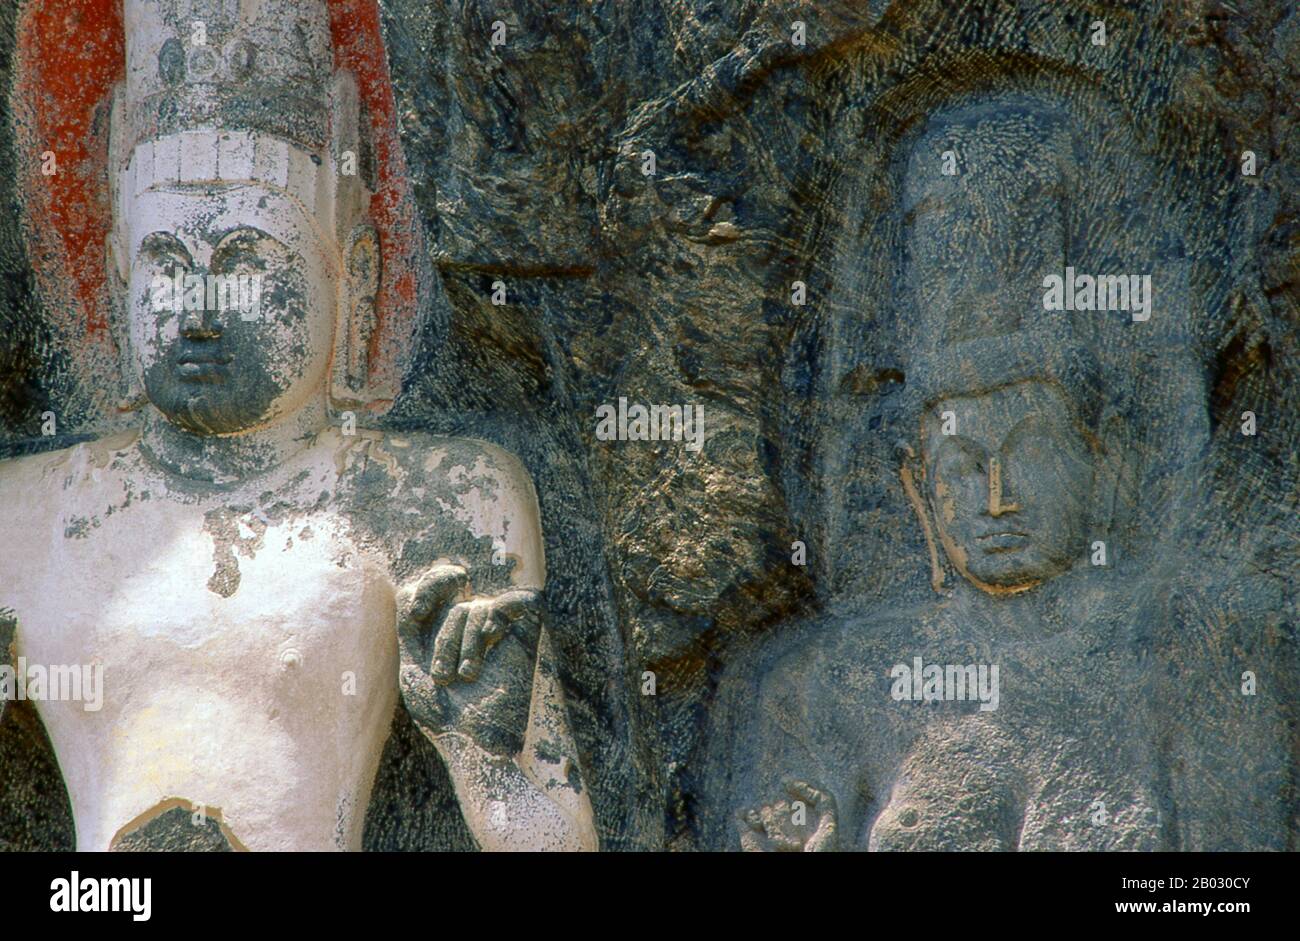 El remoto sitio budista antiguo de Bururuvagala (que significa "imágenes de  Buda de tonos" en Sinhalese) se cree que data del siglo X, cuando el  budismo mahayana dominó partes de Sri Lanka.